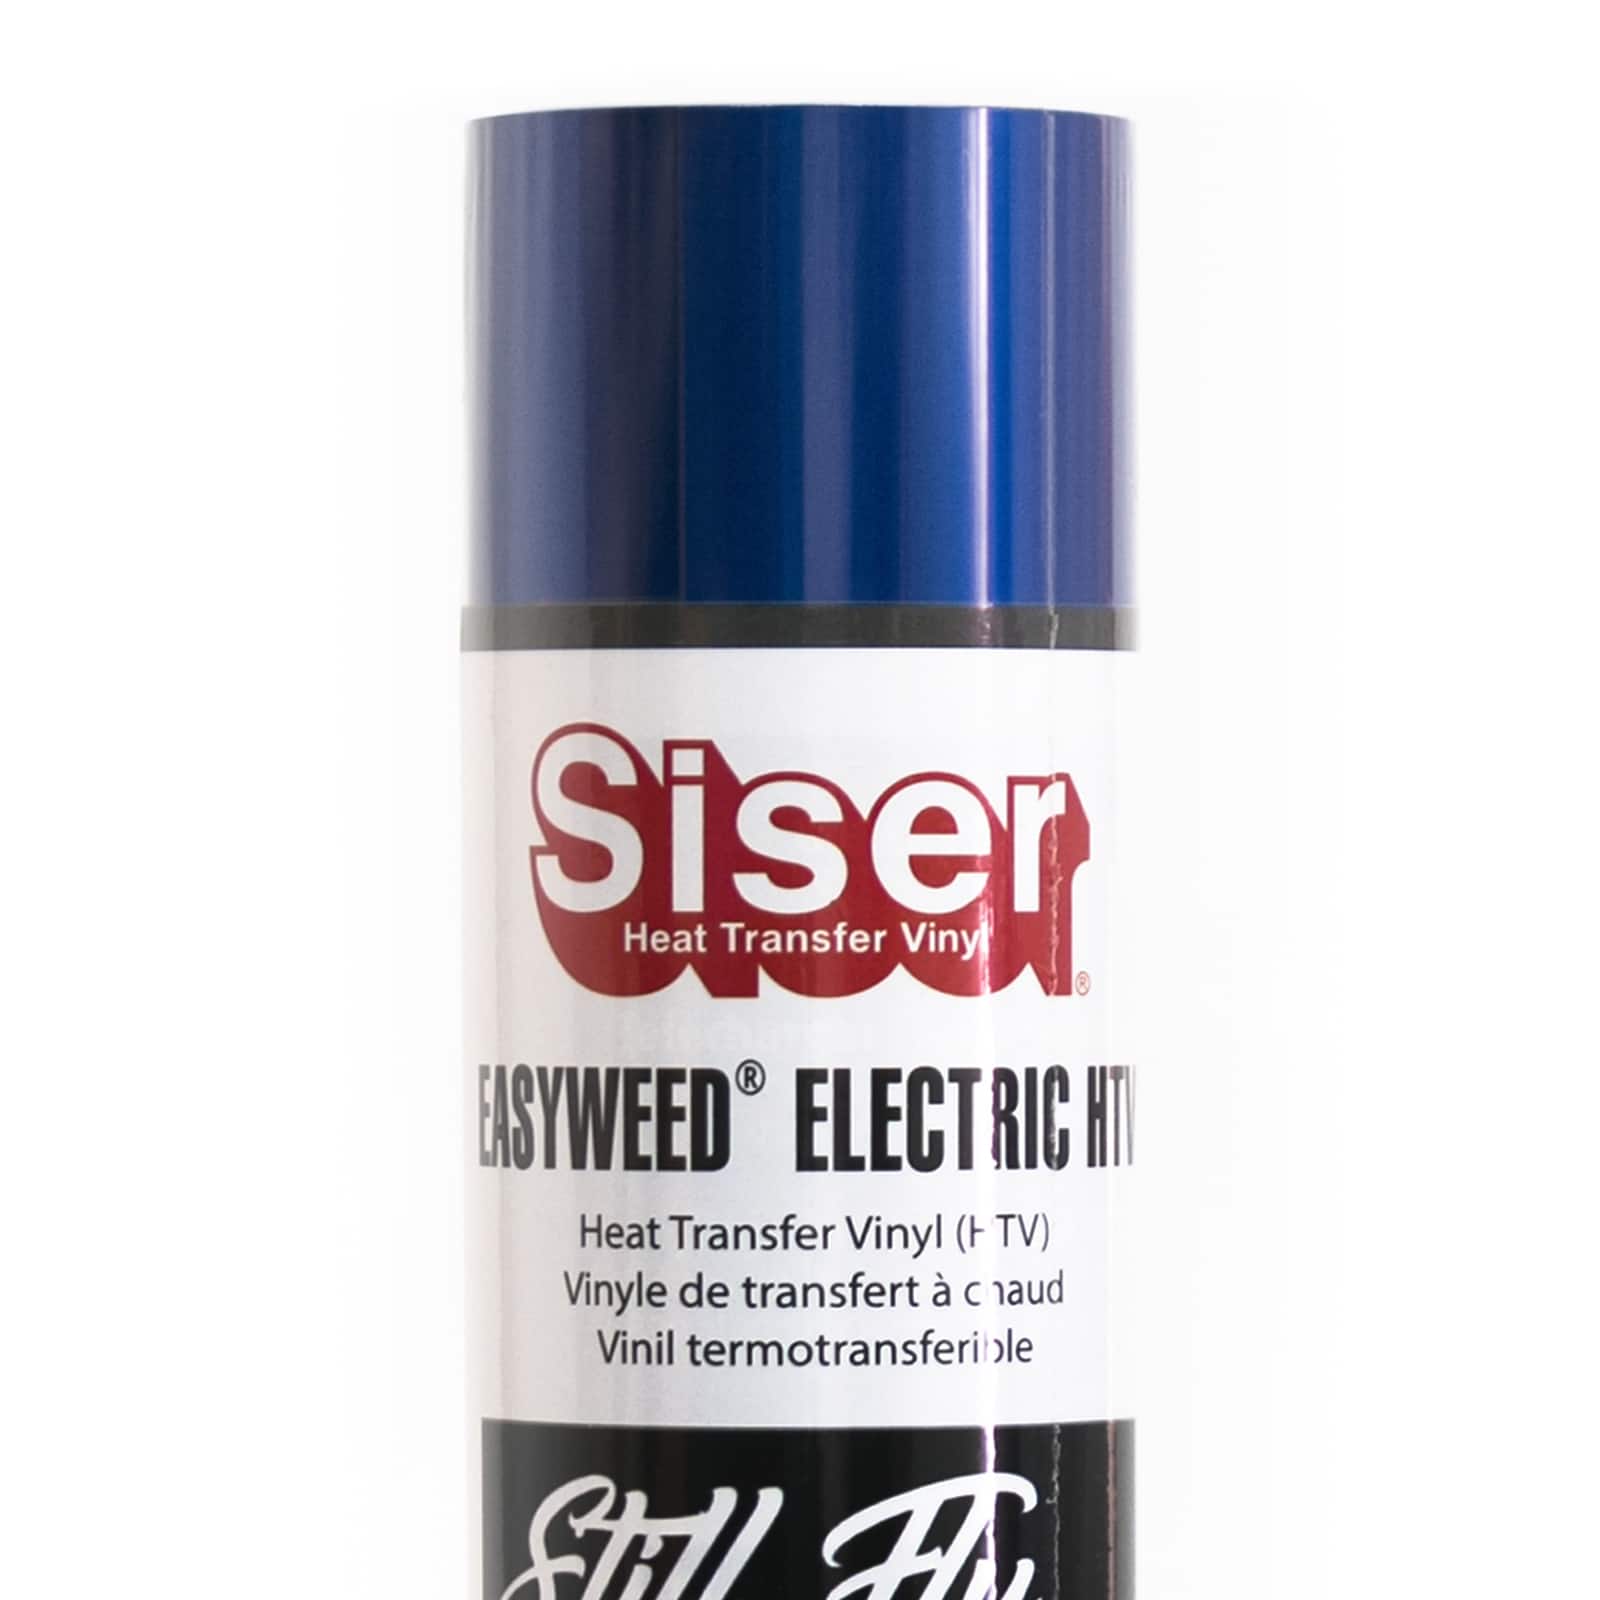 Siser EasyWeed Electric Heat Transfer Vinyl